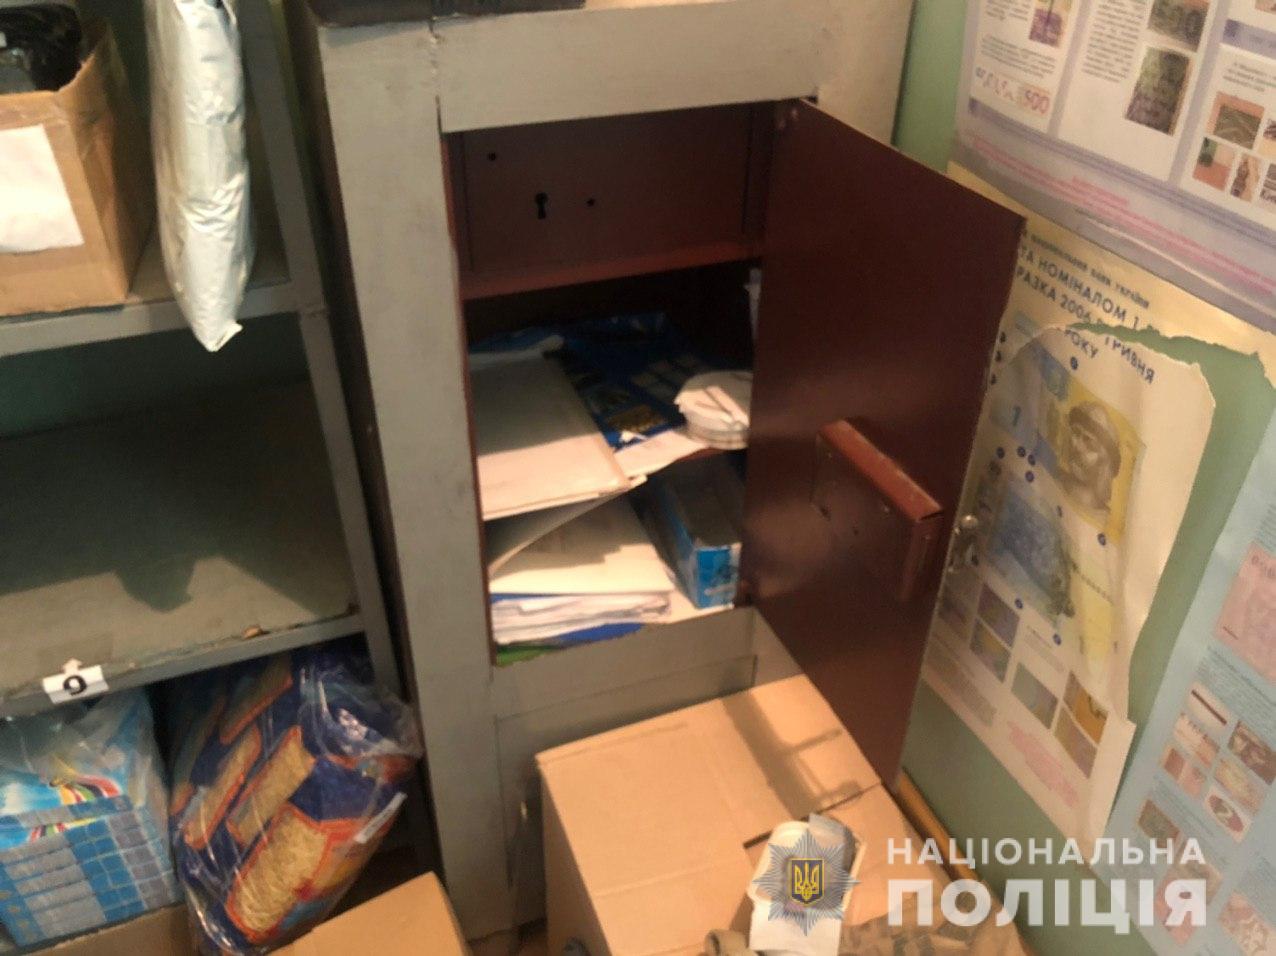 Вооруженный дубинкой разбойник ограбил отделение «Укрпочты», фото: Национальная полиция